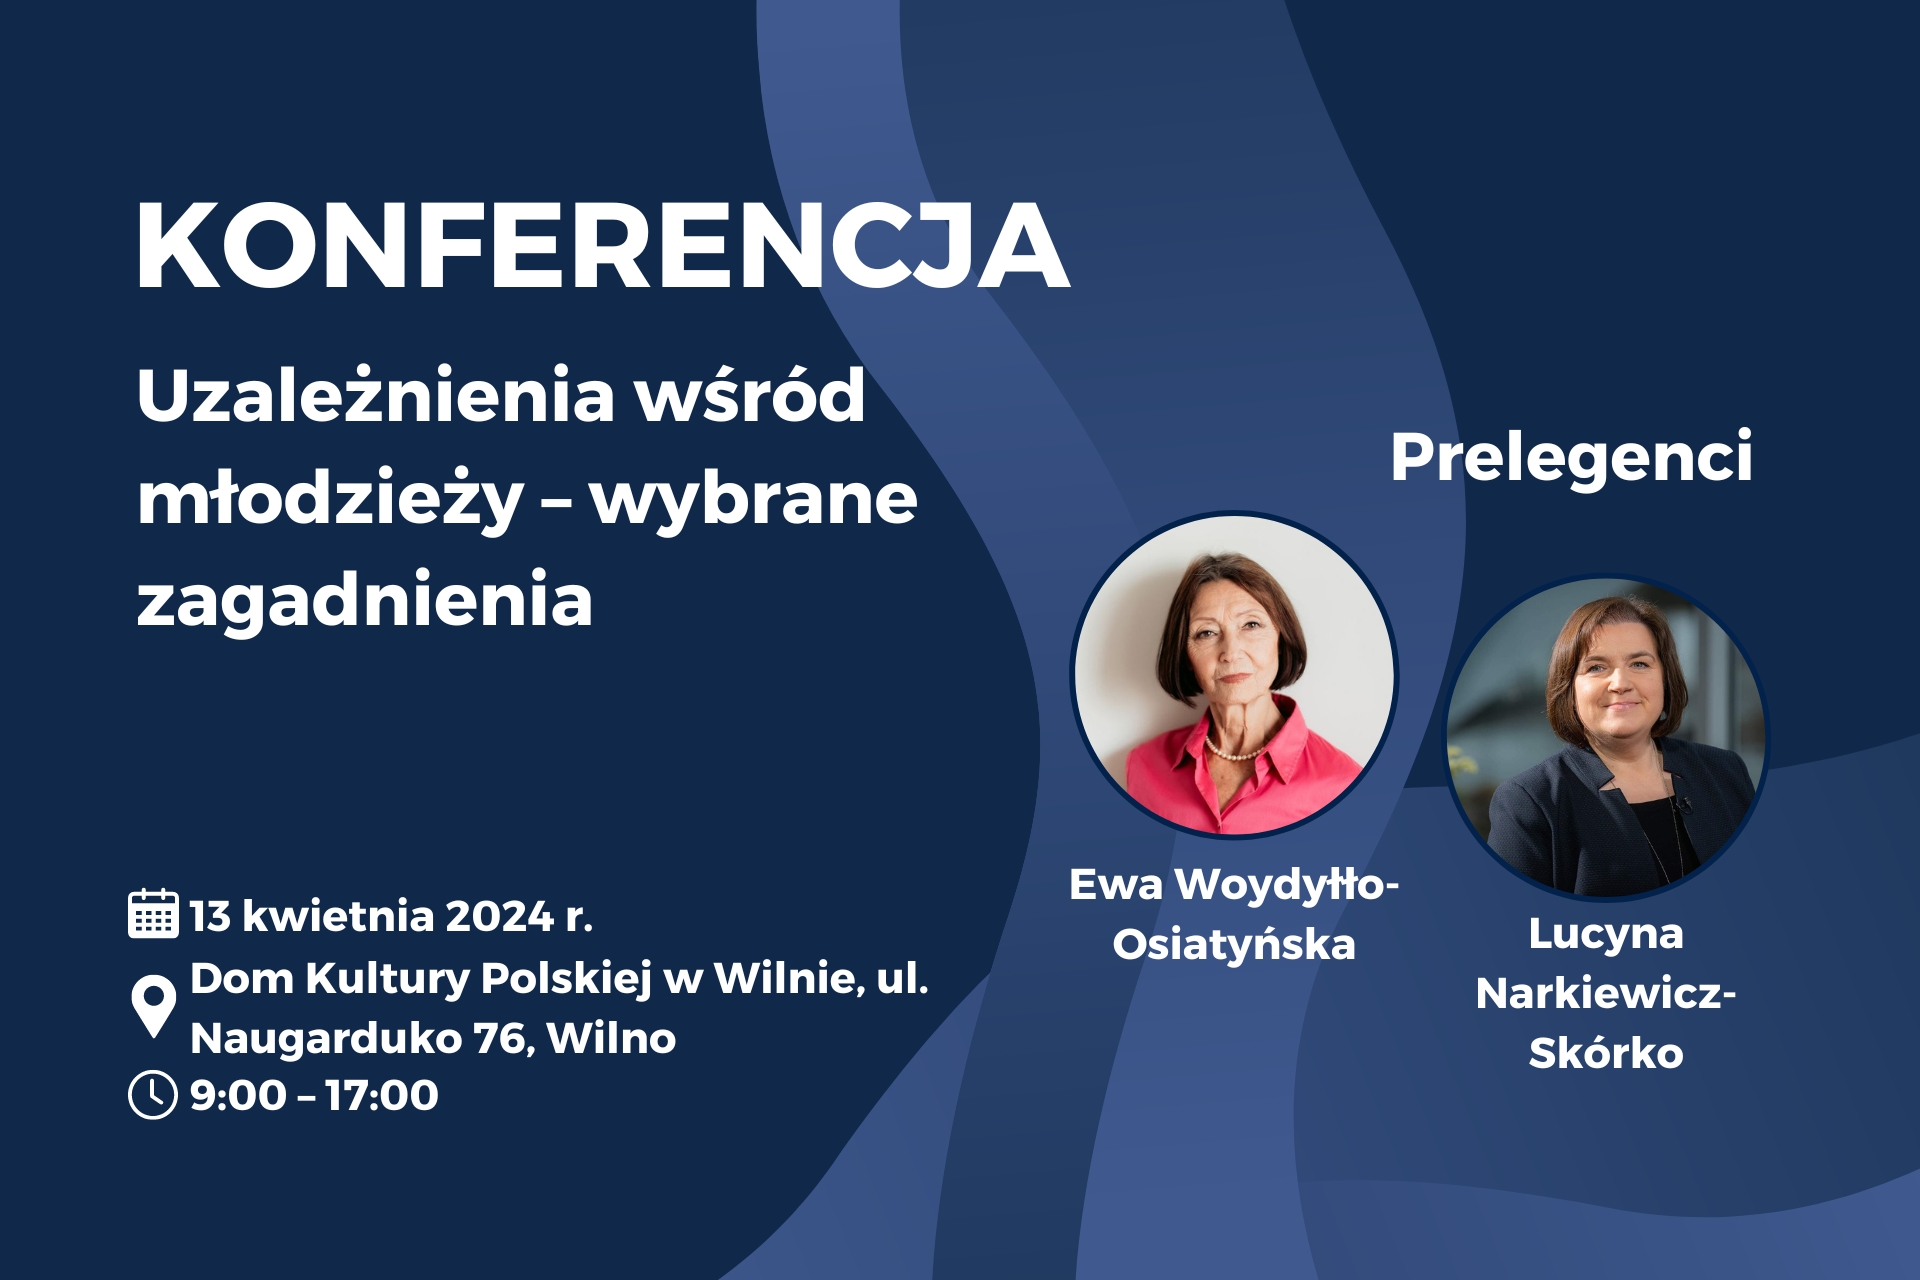 Polscy medycy na Litwie organizują konferencję na temat uzależnień…